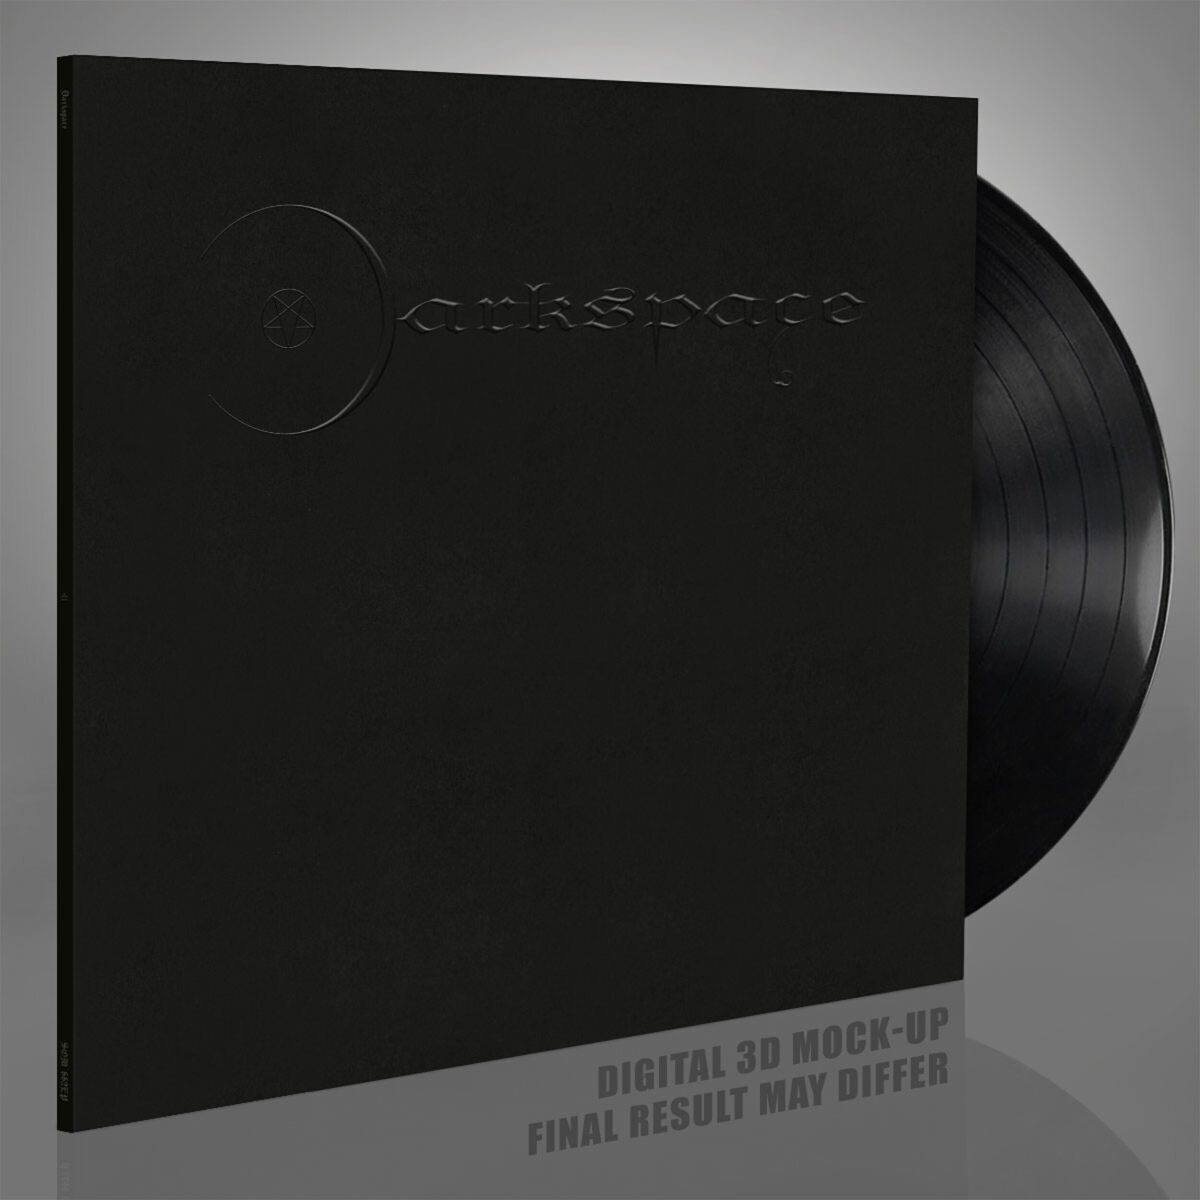 Dark space - II von Darkspace - LP (Limited Edition, Standard)